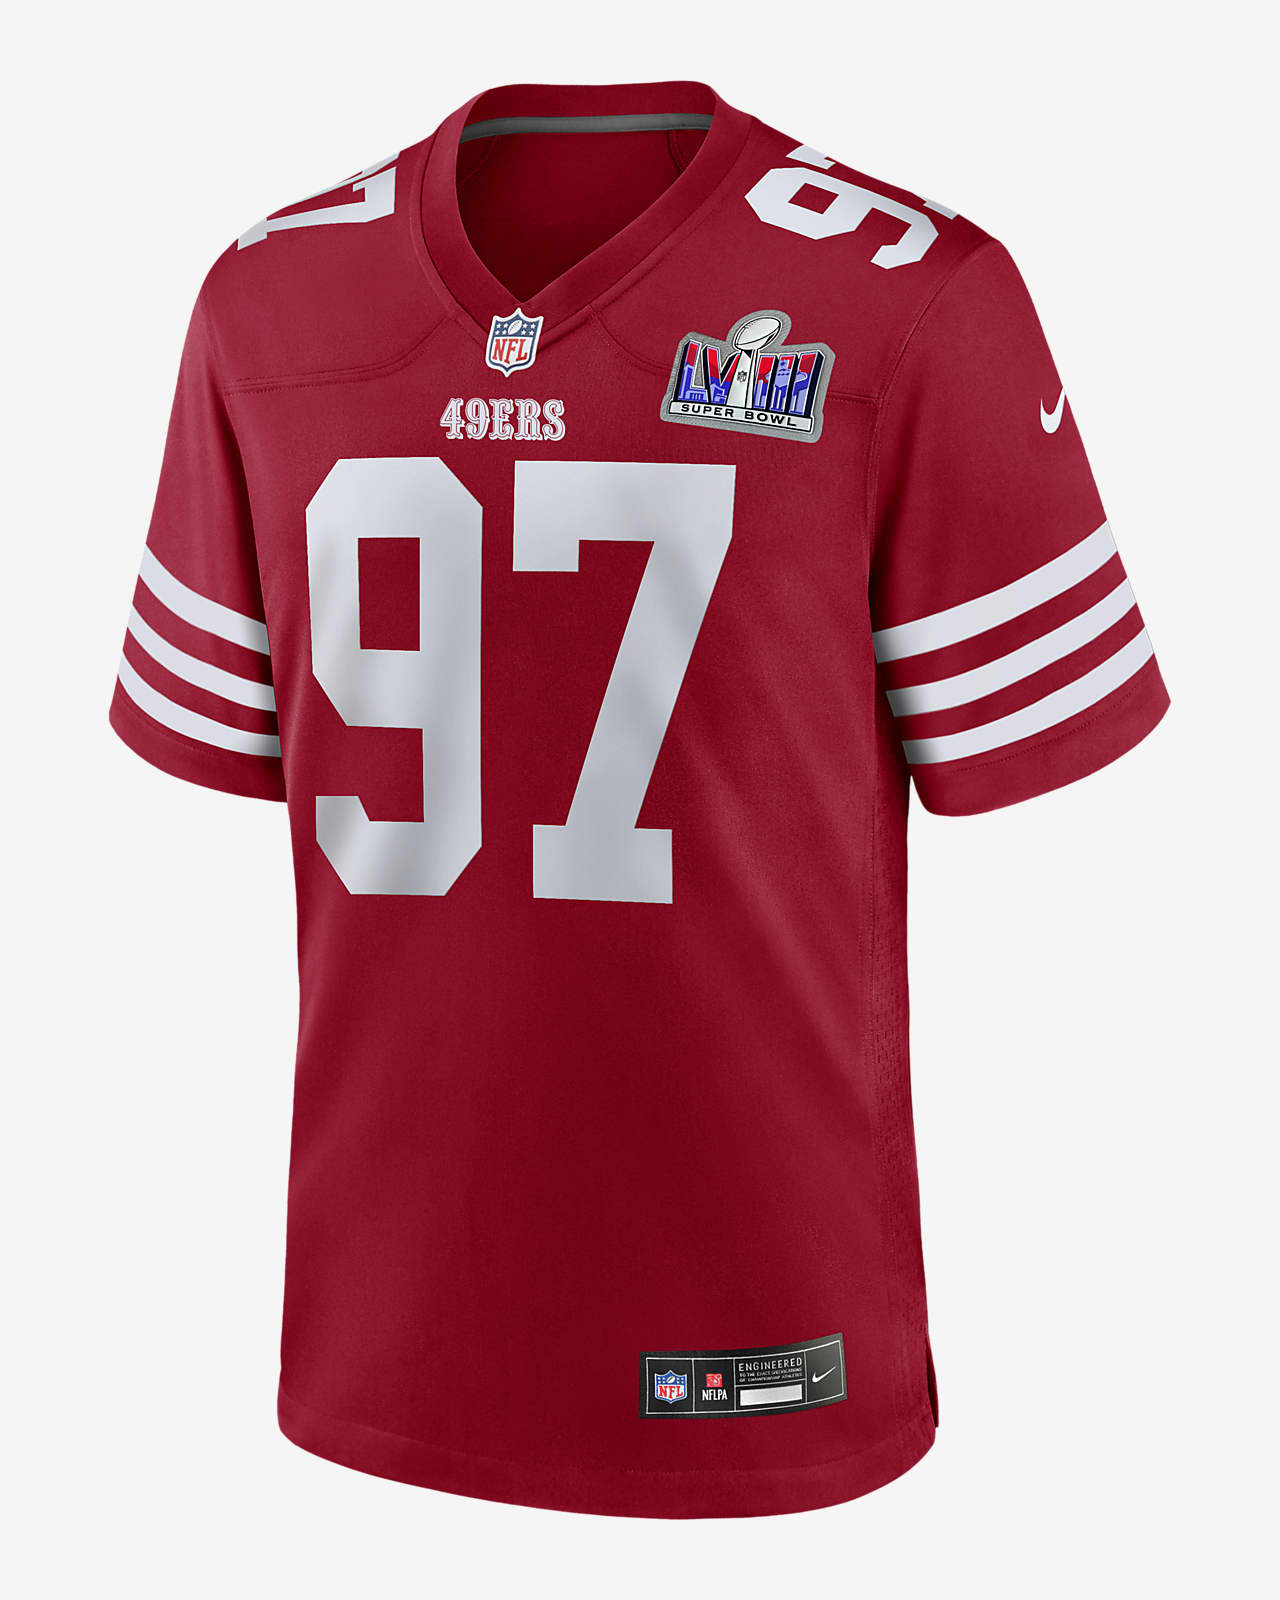 Jersey Nike de la NFL Game para hombre Nick Bosa San Francisco 49ers Super Bowl LVIII